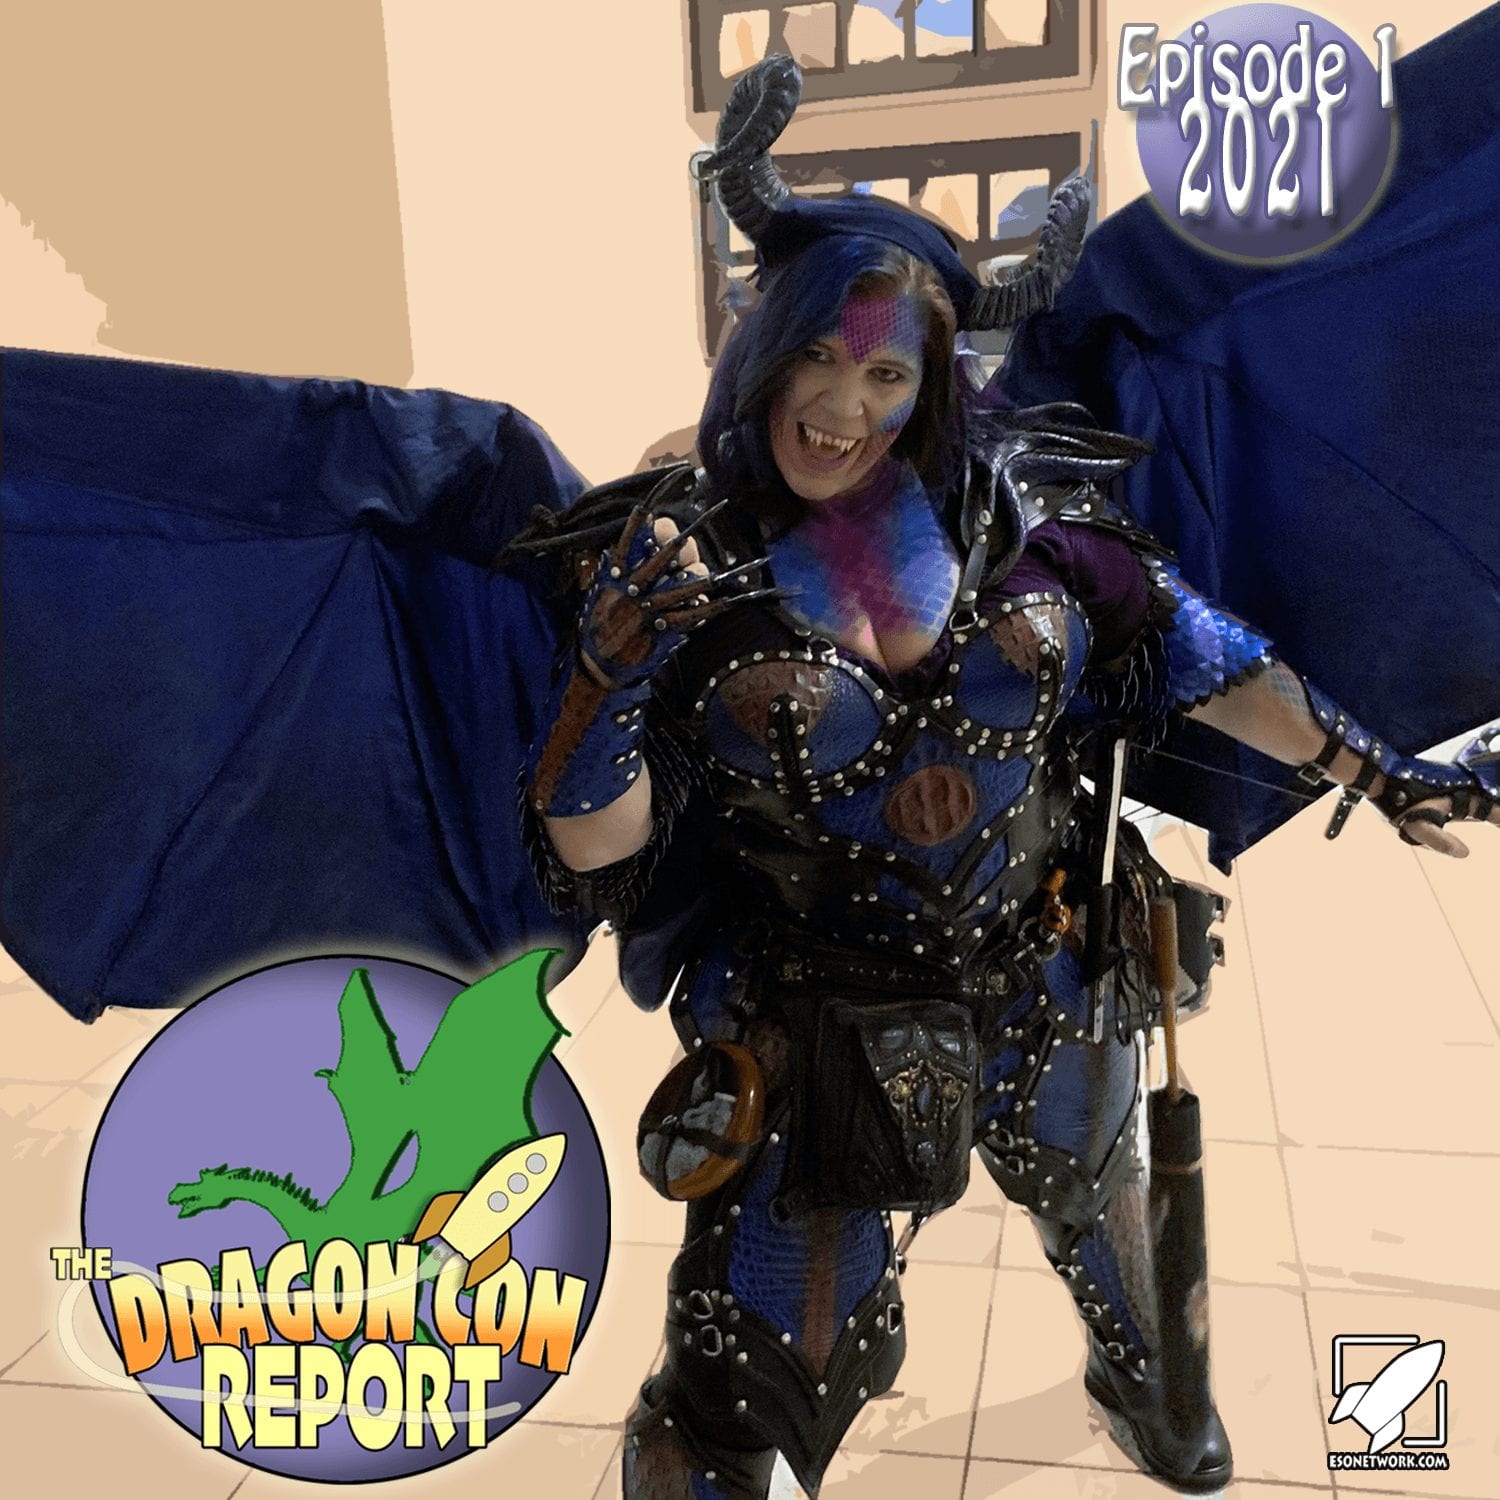 The 2021 Dragon Con Report Episode 1